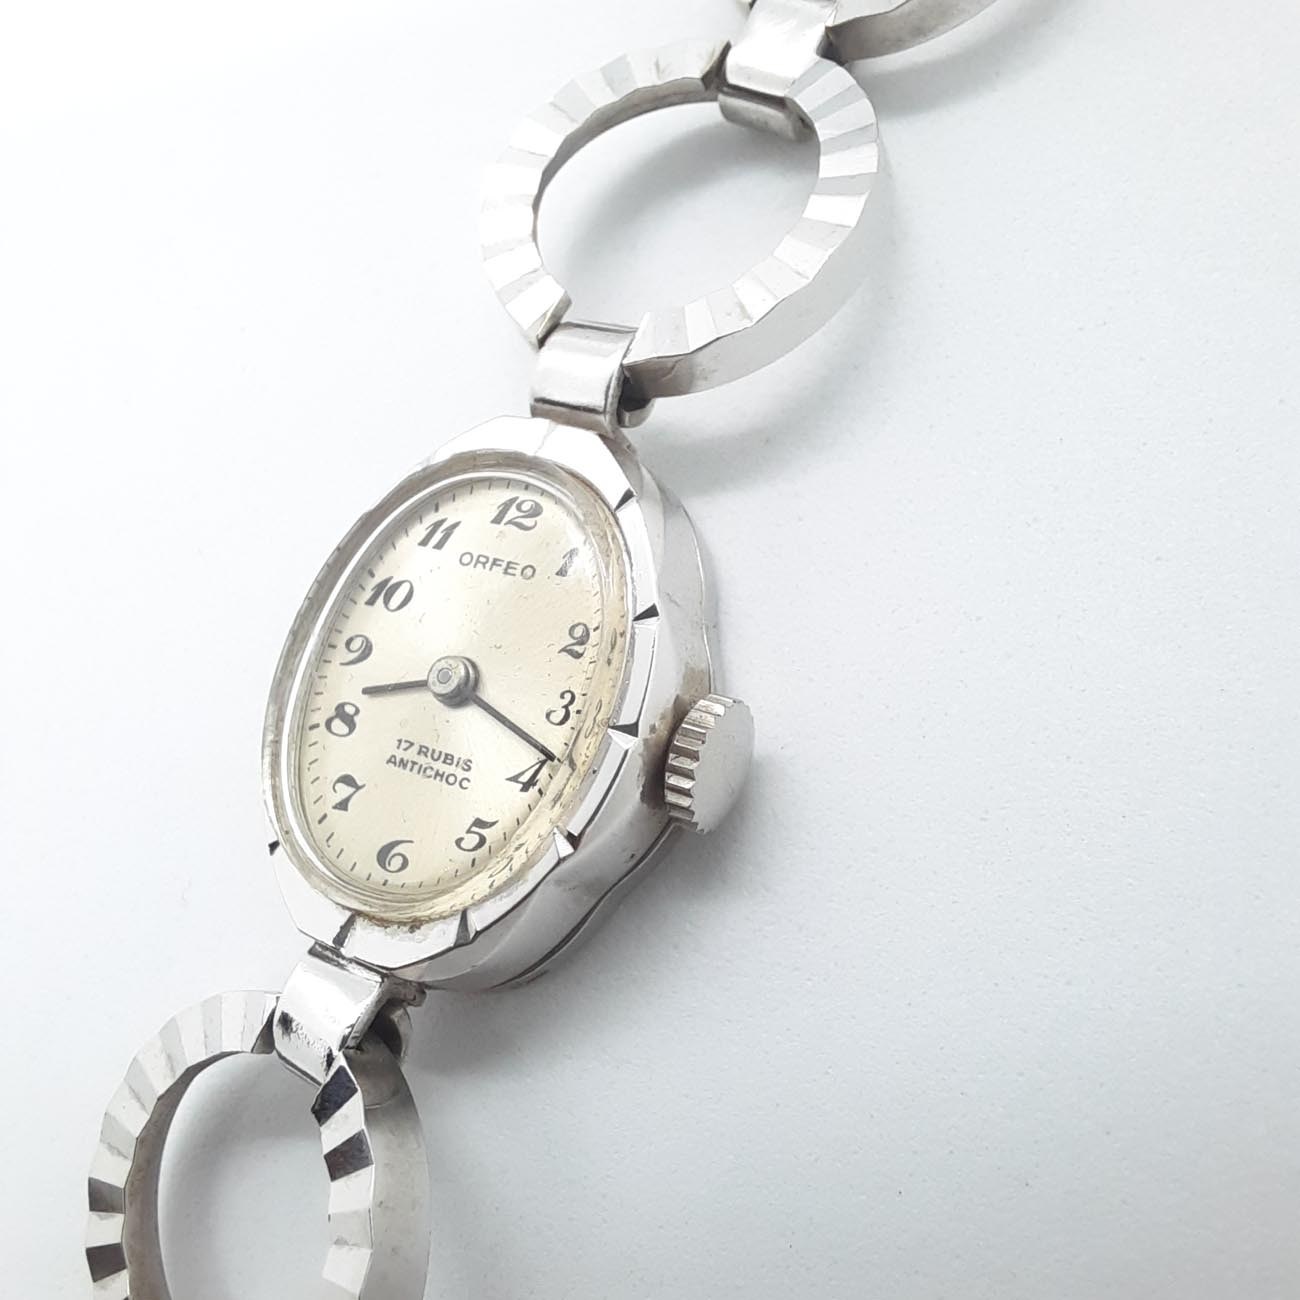 Vintage κουρδιστό ρολόι